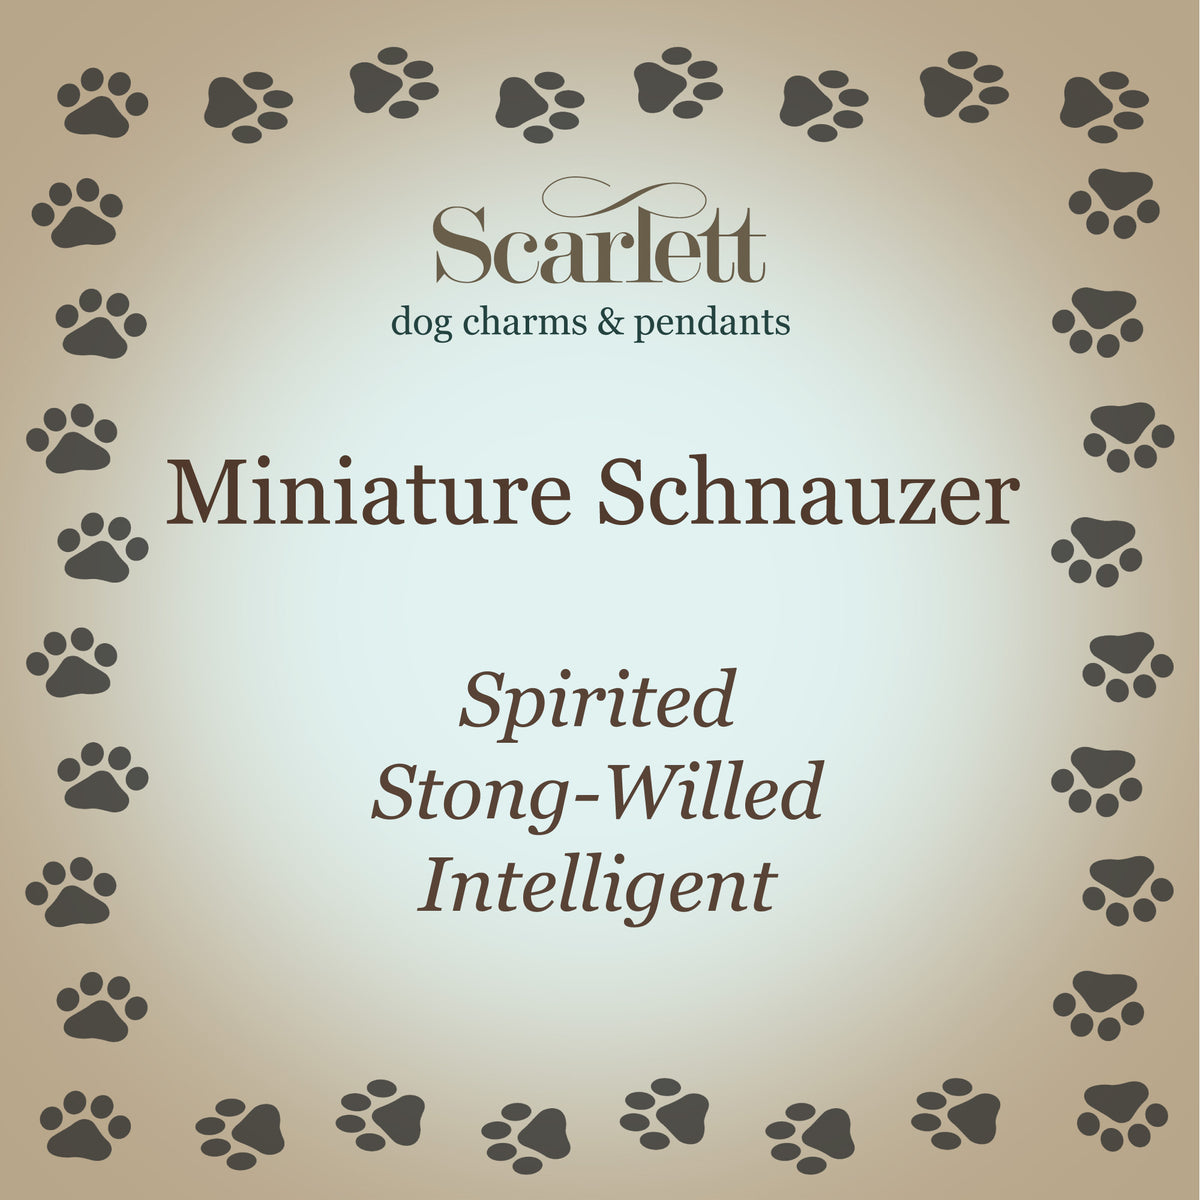 Collier d’étiquette de chien en argent personnalisé Schauzer miniature